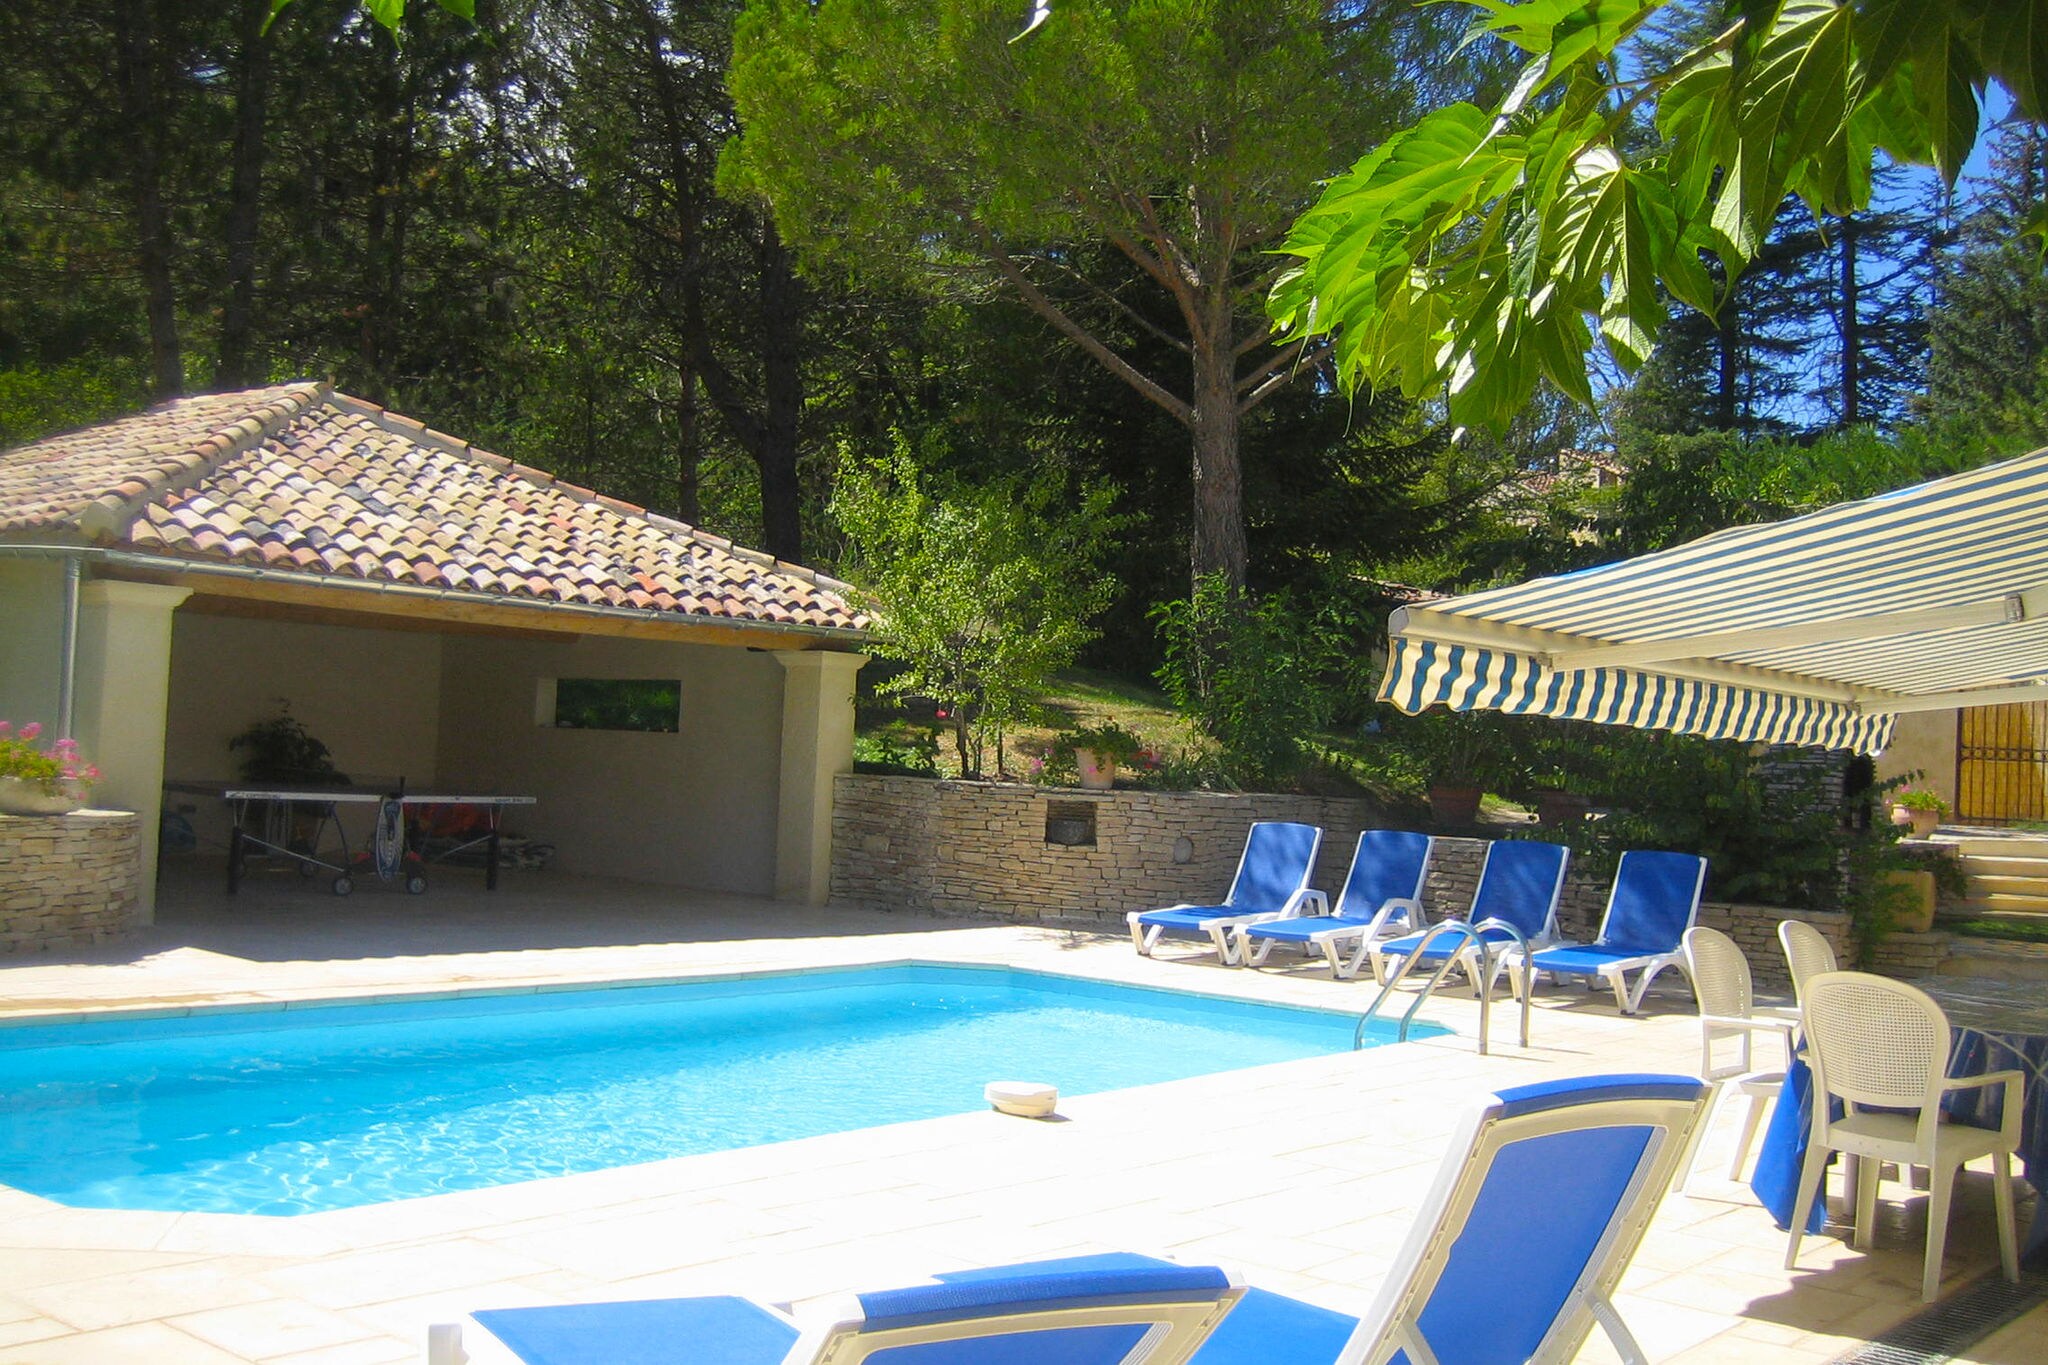 Charmante villa provençale avec piscine privée chauffée et vue panoramique